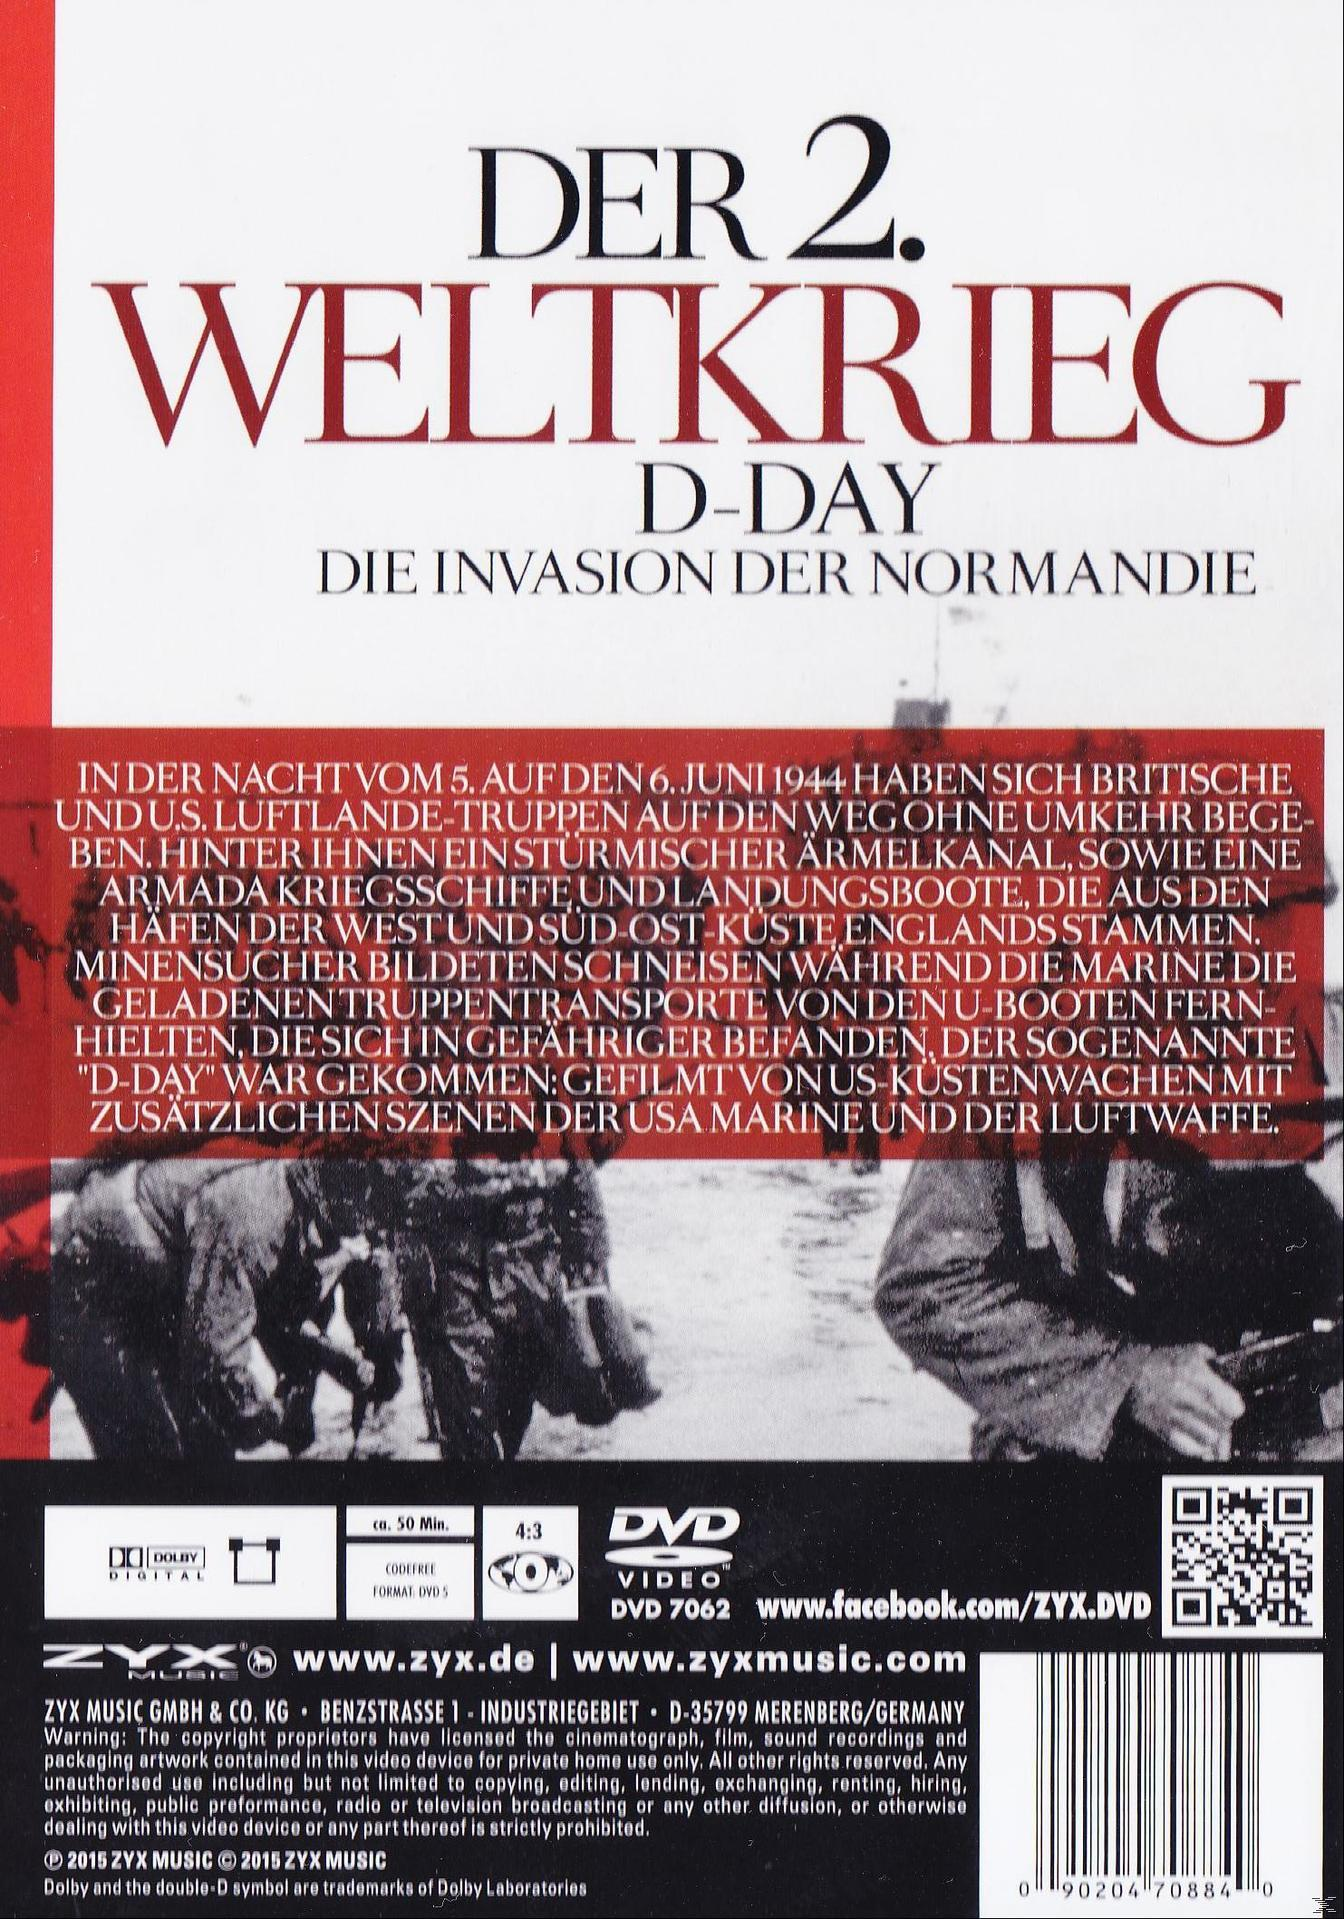 DVD Der Invasion der 2.Weltkrieg-d-Day-die Normandie